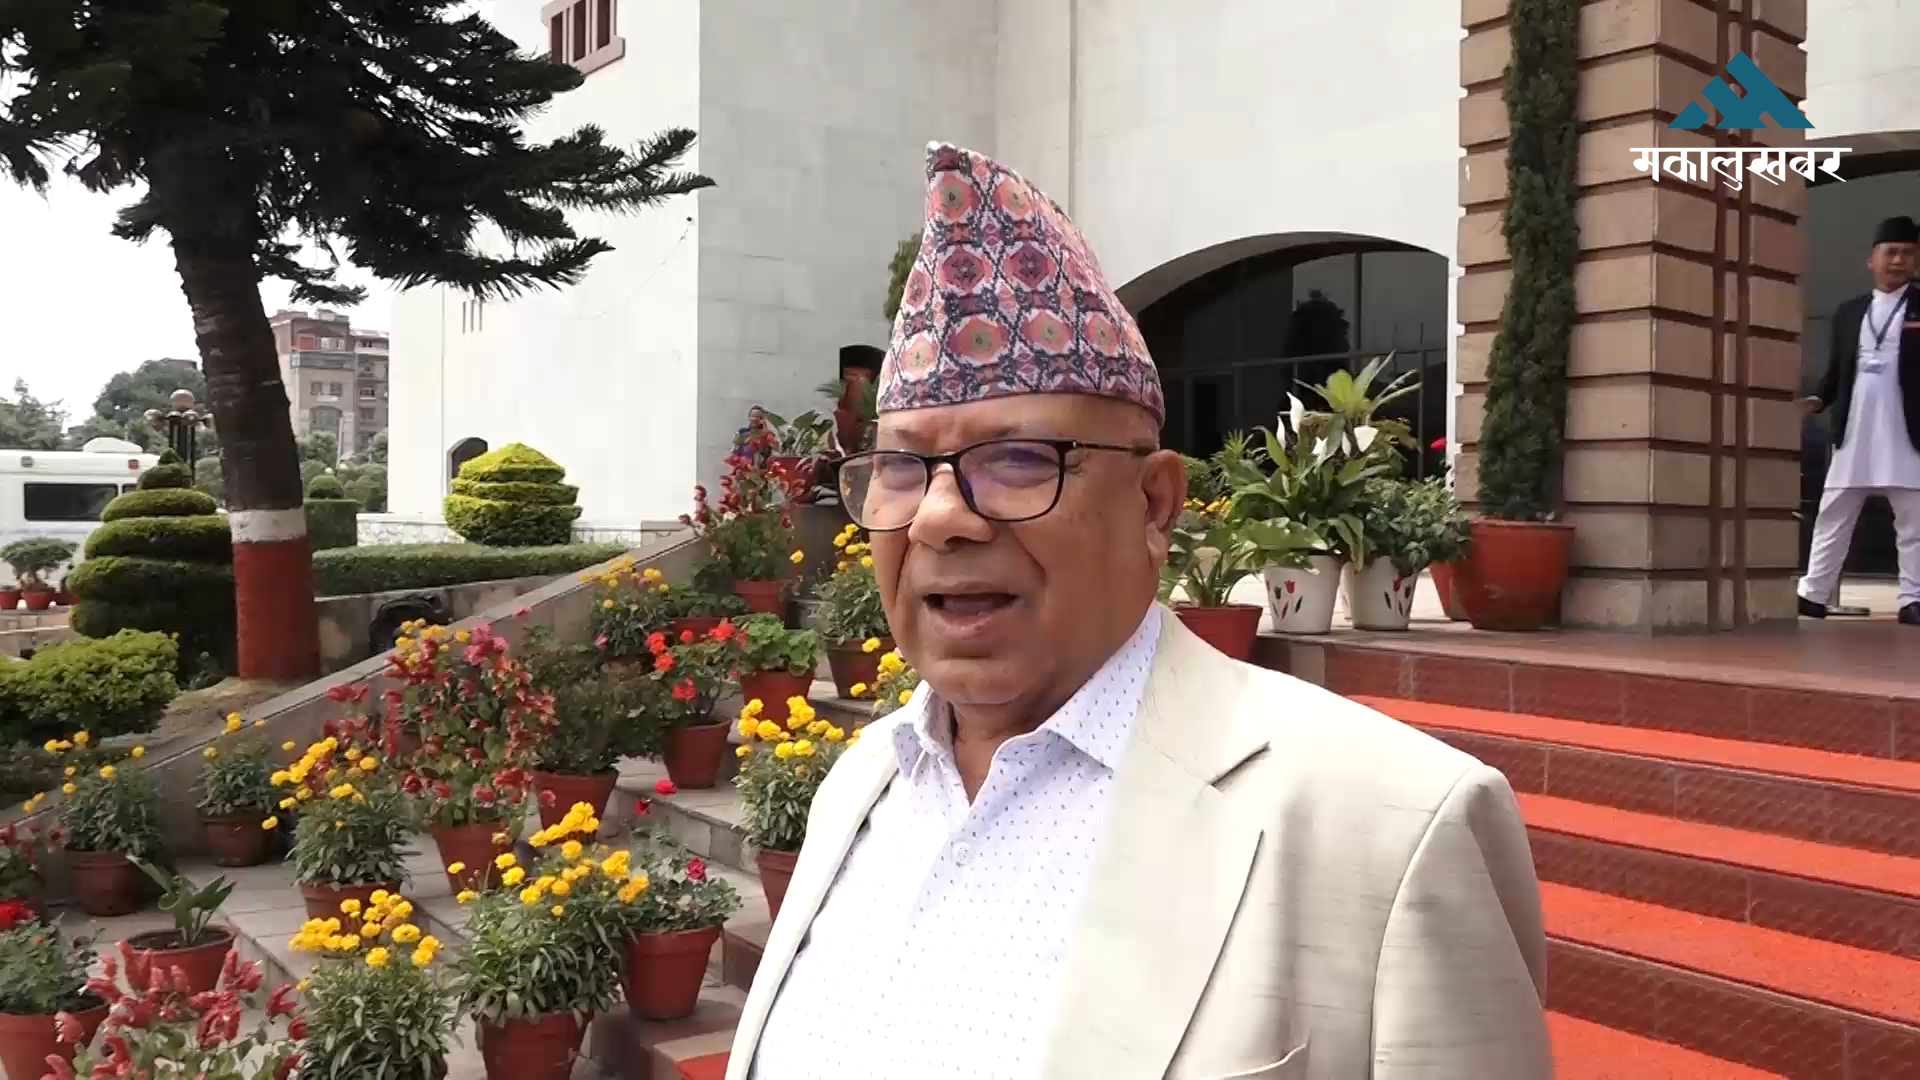 मन्त्री हेरफेरबारे मलाई थाहा छैन, प्रधानमन्त्रीसँग सोधौँला : माधव नेपाल(भिडिओ)